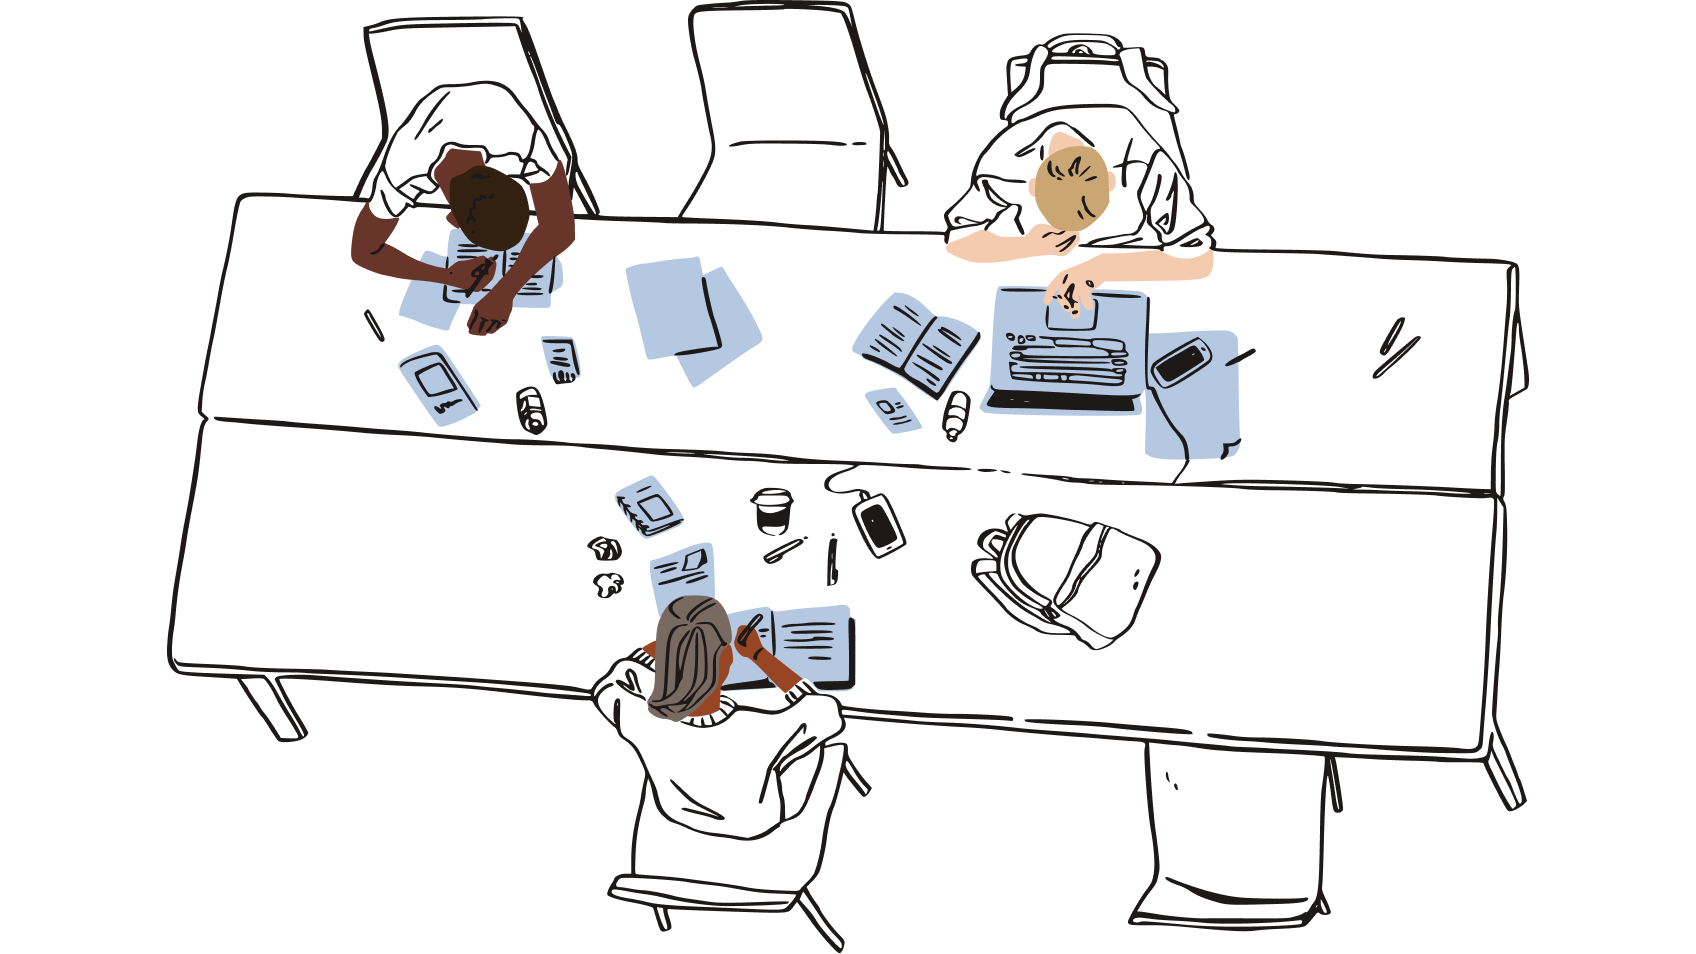 Ilustracja przedstawiająca grupę osób siedzących we wspólnym miejscu pracy i otoczonych skrawkami papieru, reprezentująca ryzyko pozostawiania fizycznych kopii haseł w pobliżu biurka.